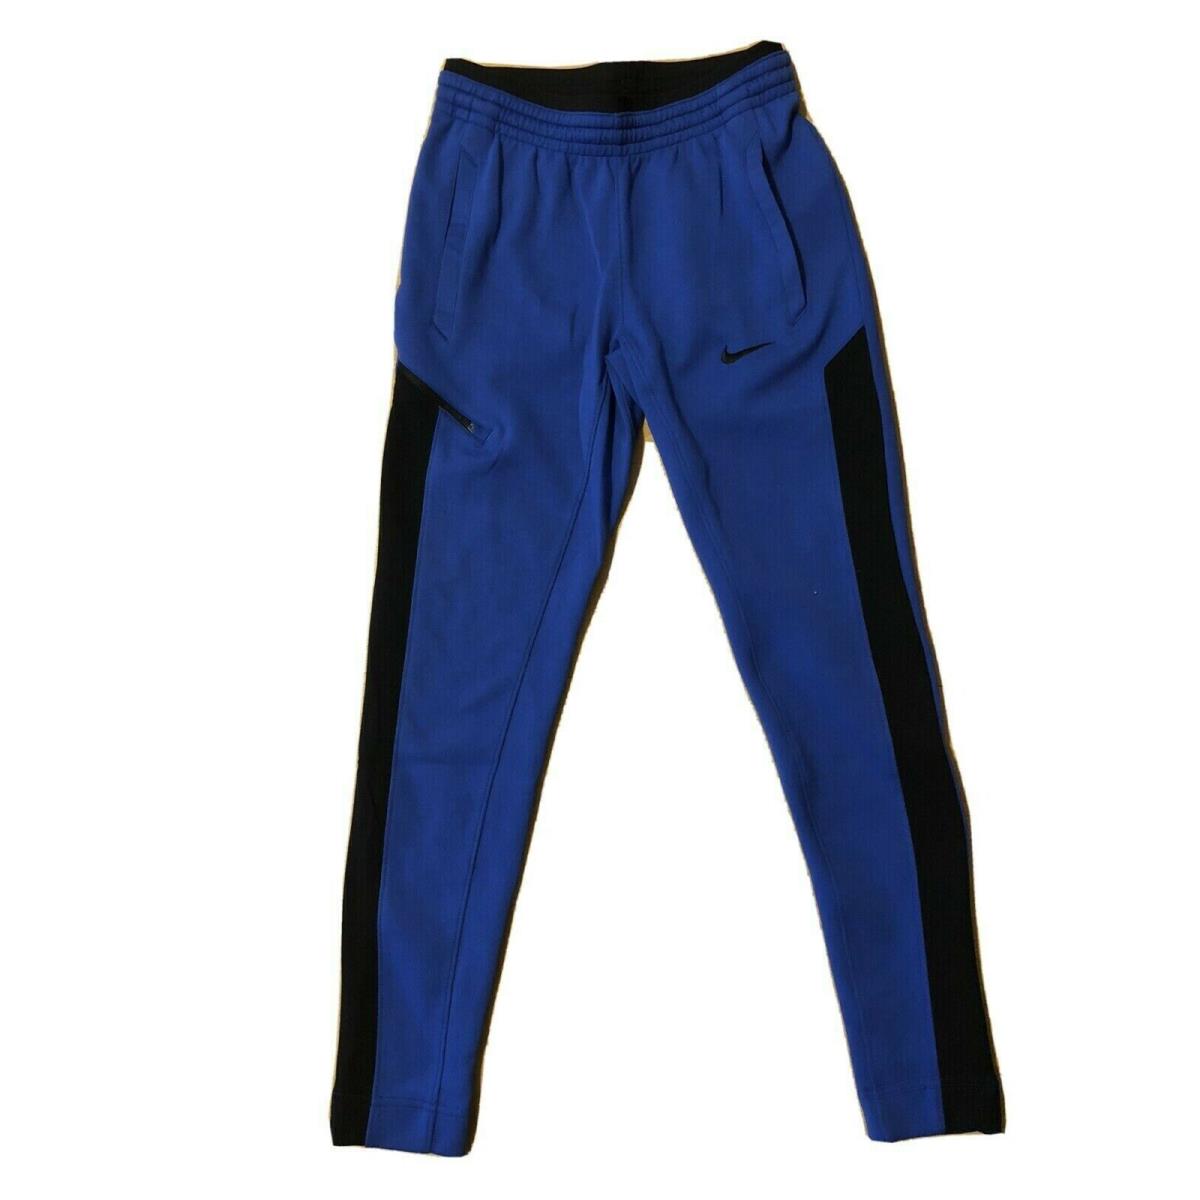 Nike Women`s Basketball Jogger Taper Pants Blue Black Size L 930767-493